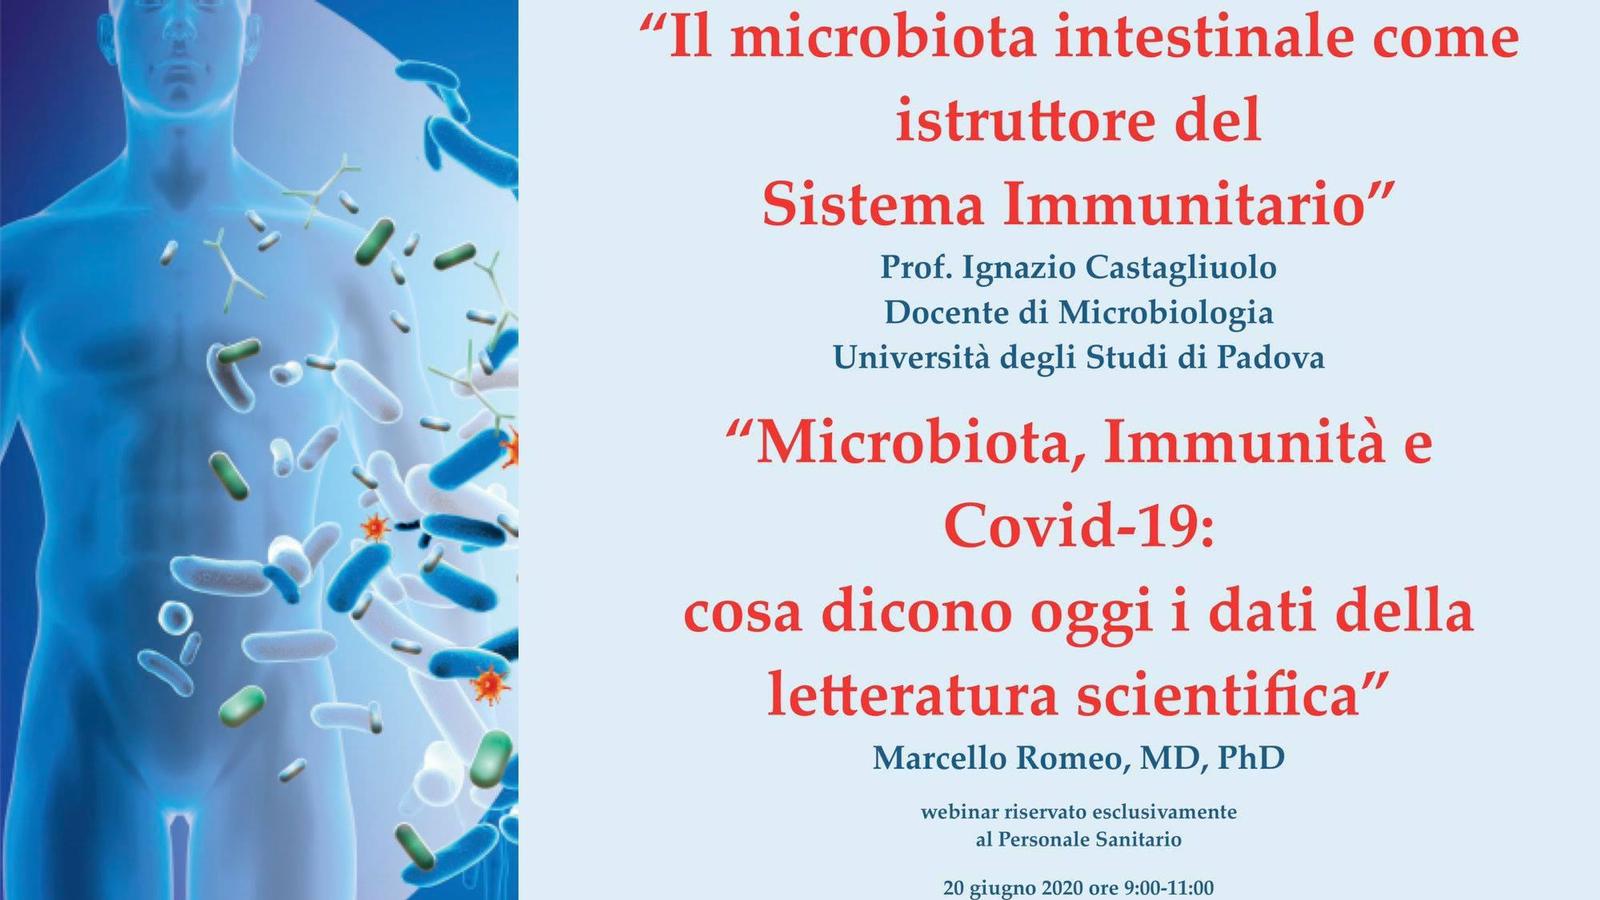 Il Microbiota Instestinale come “istruttore” del nostro Sistema Immunitario 1